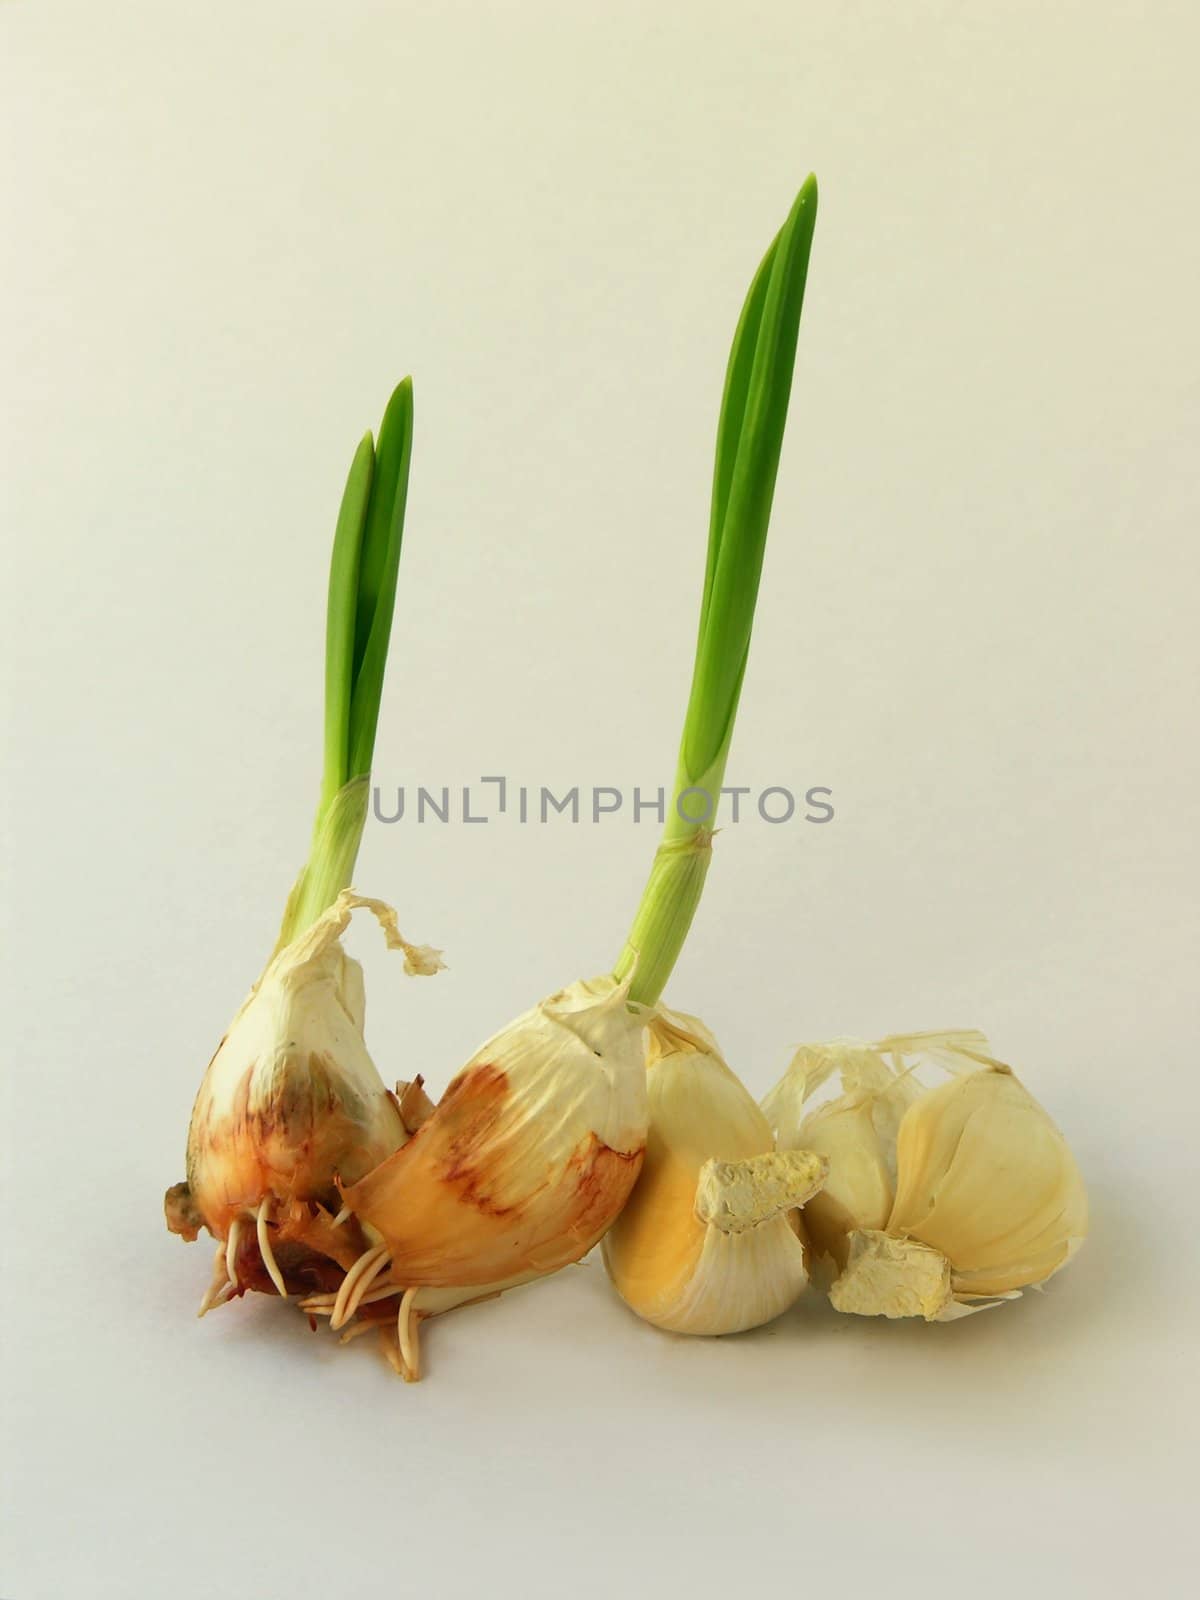 garlic germination